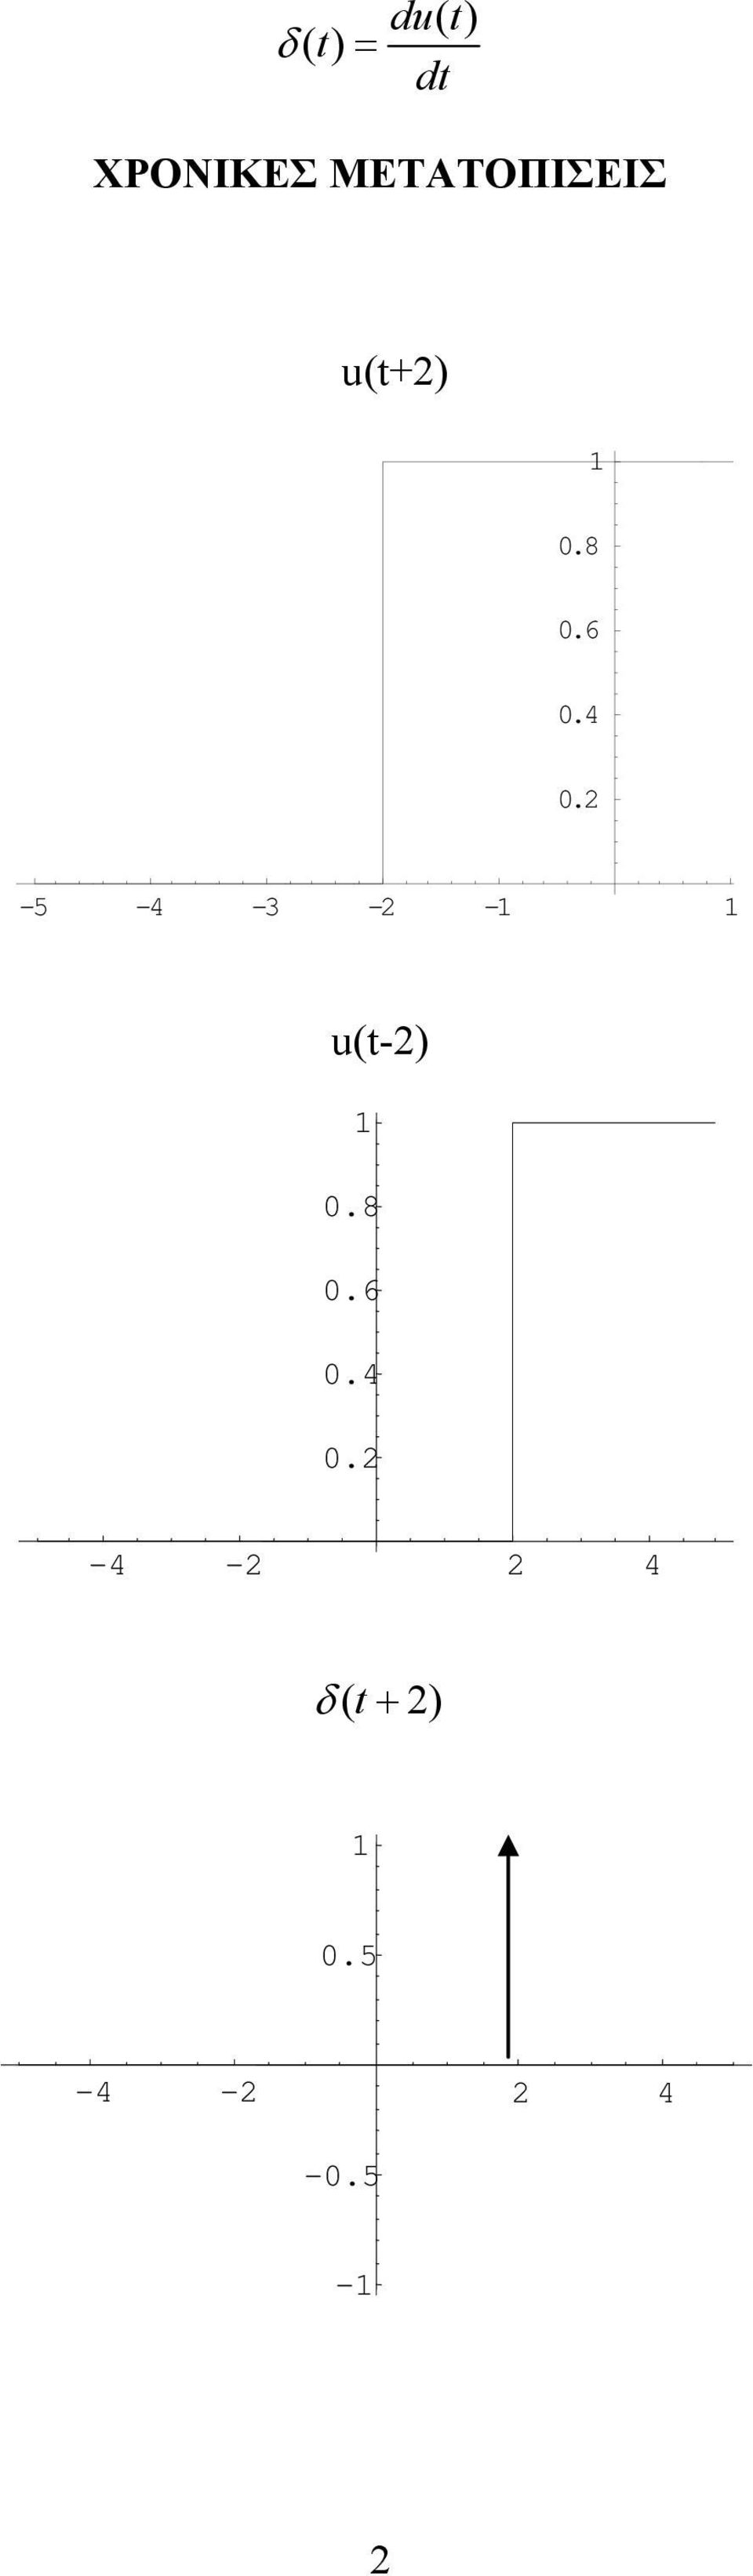 -5-4 -3 - - u(-).8.6.4. -4-4 δ ( + ).